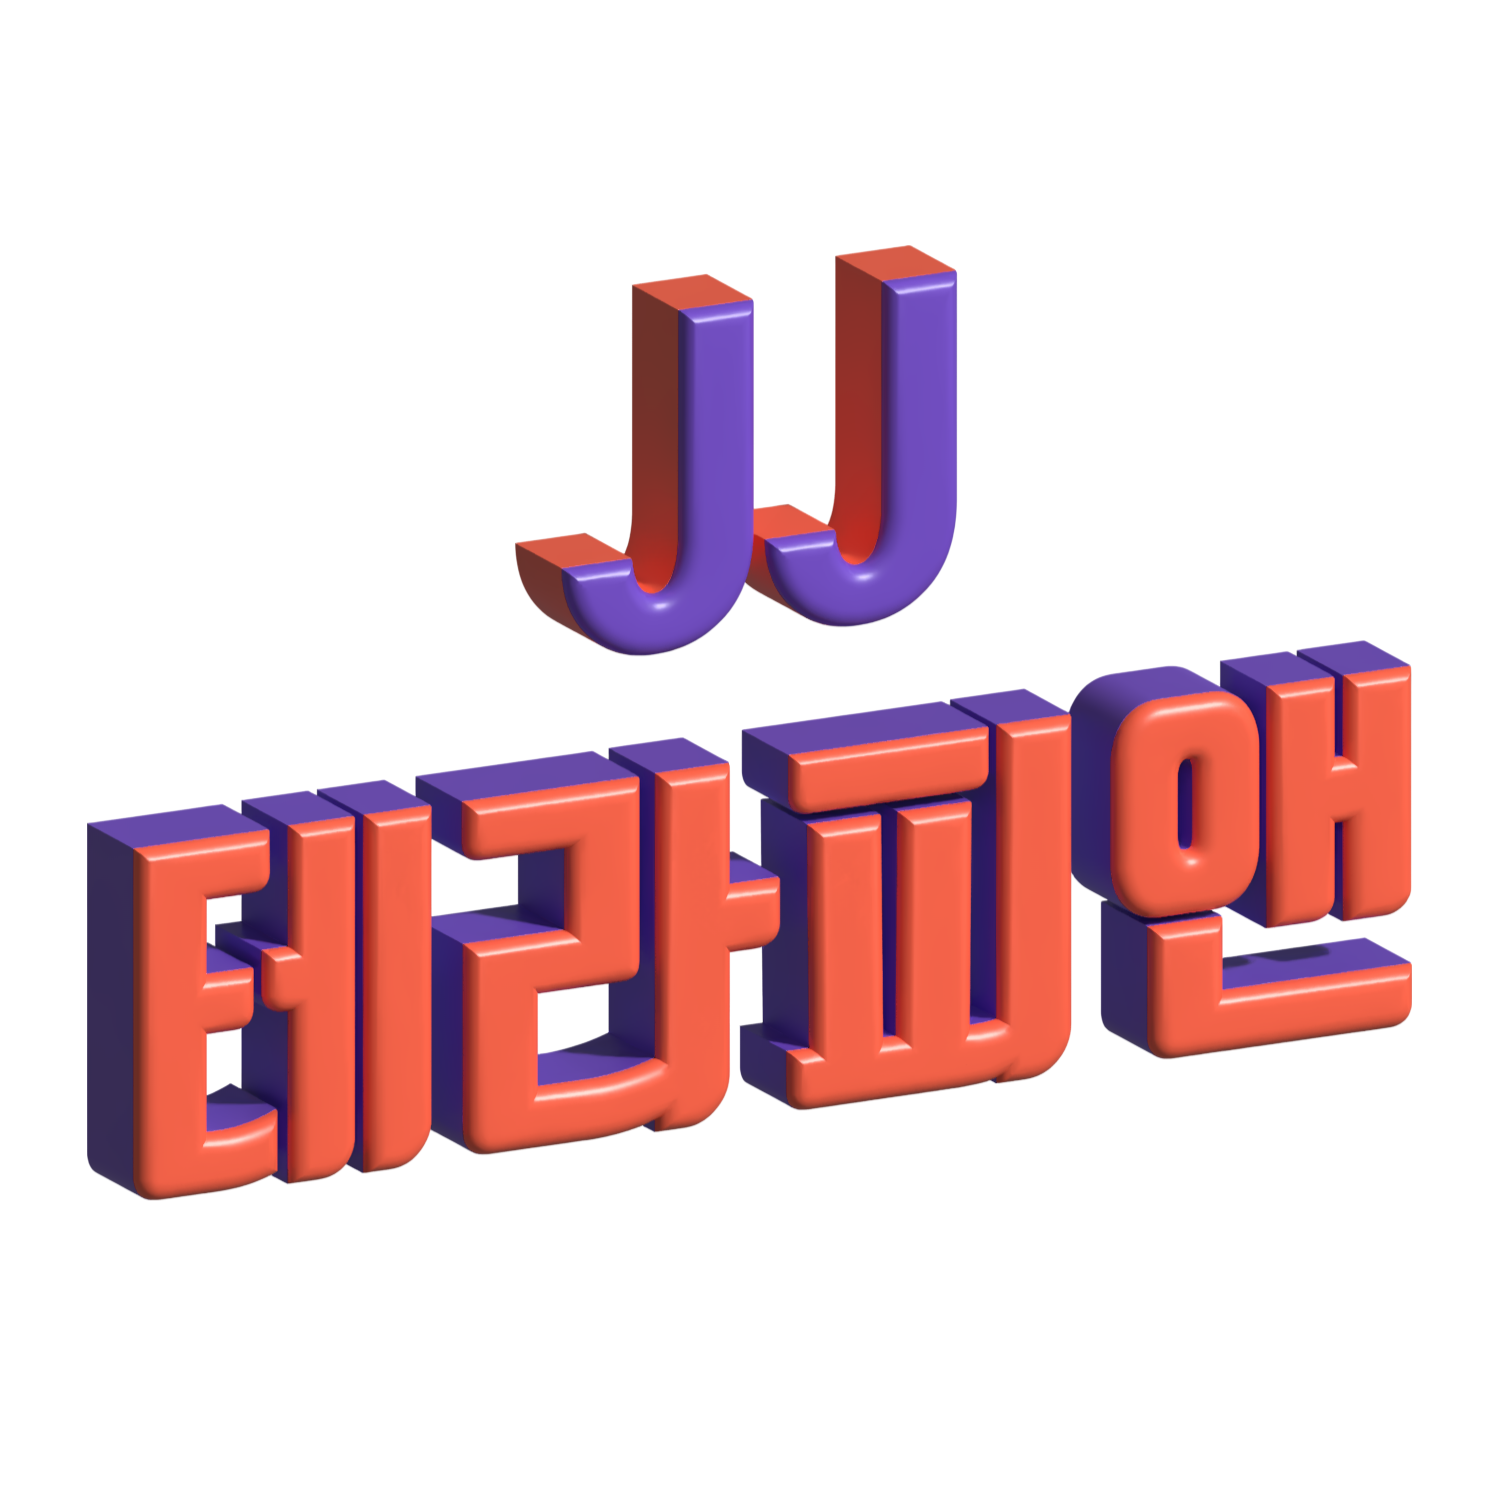 강남구 신논현역 JJ테라피앤